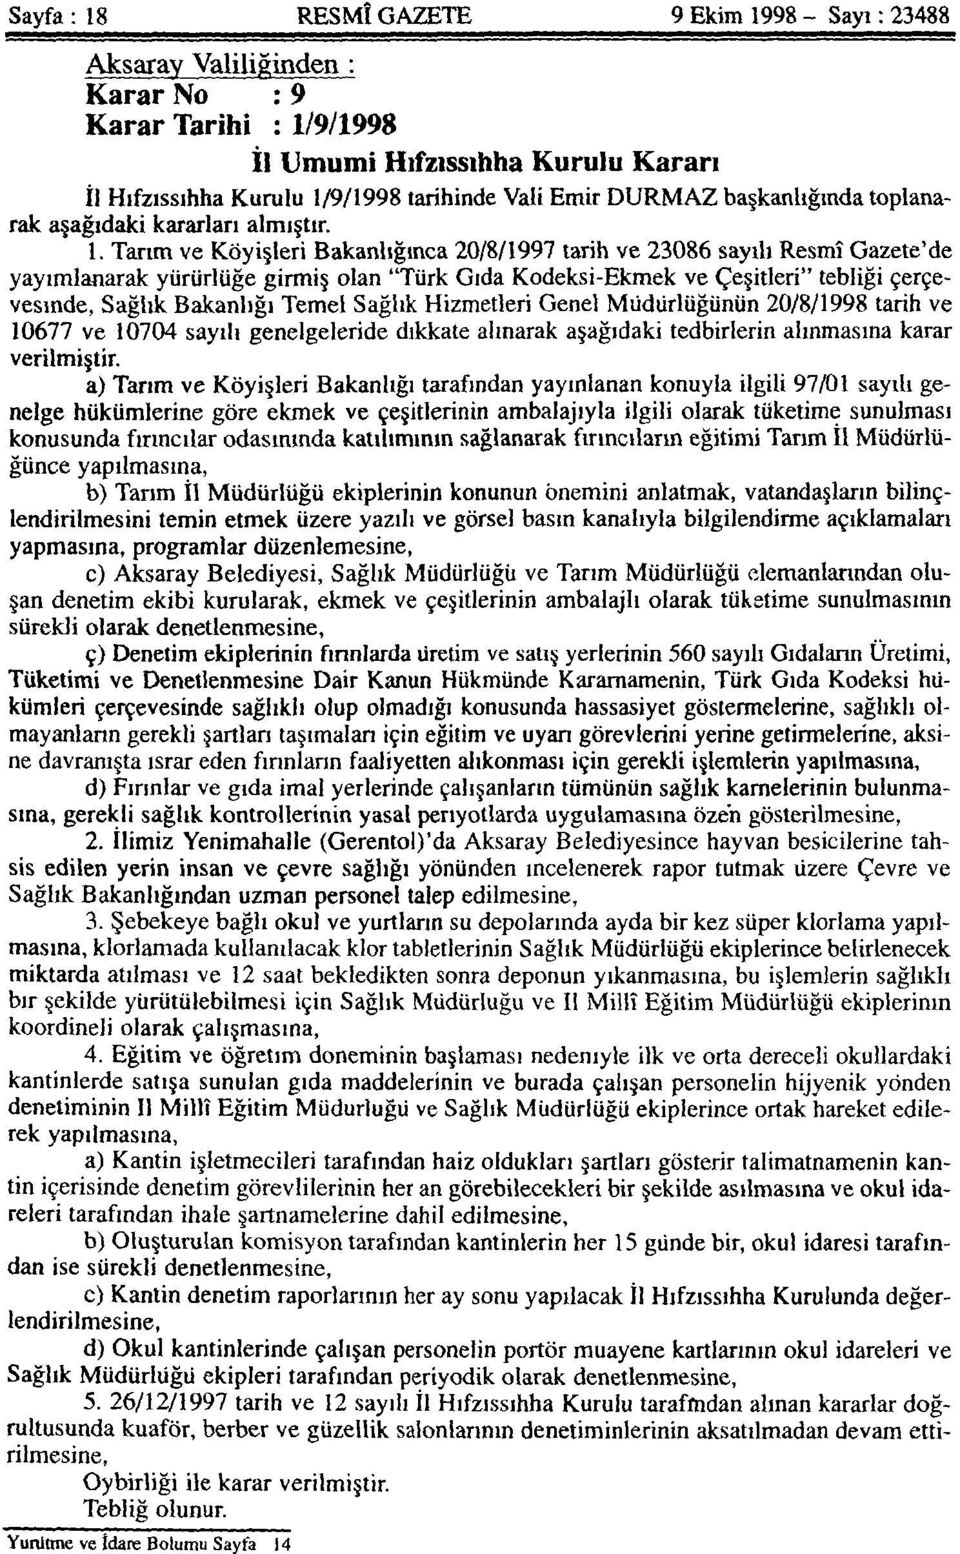 Tarım ve Köyişleri Bakanlığınca 20/8/1997 tarih ve 23086 sayılı Resmî Gazete'de yayımlanarak yürürlüğe girmiş olan "Türk Gıda Kodeksi-Ekmek ve Çeşitleri" tebliği çerçevesinde, Sağlık Bakanlığı Temel